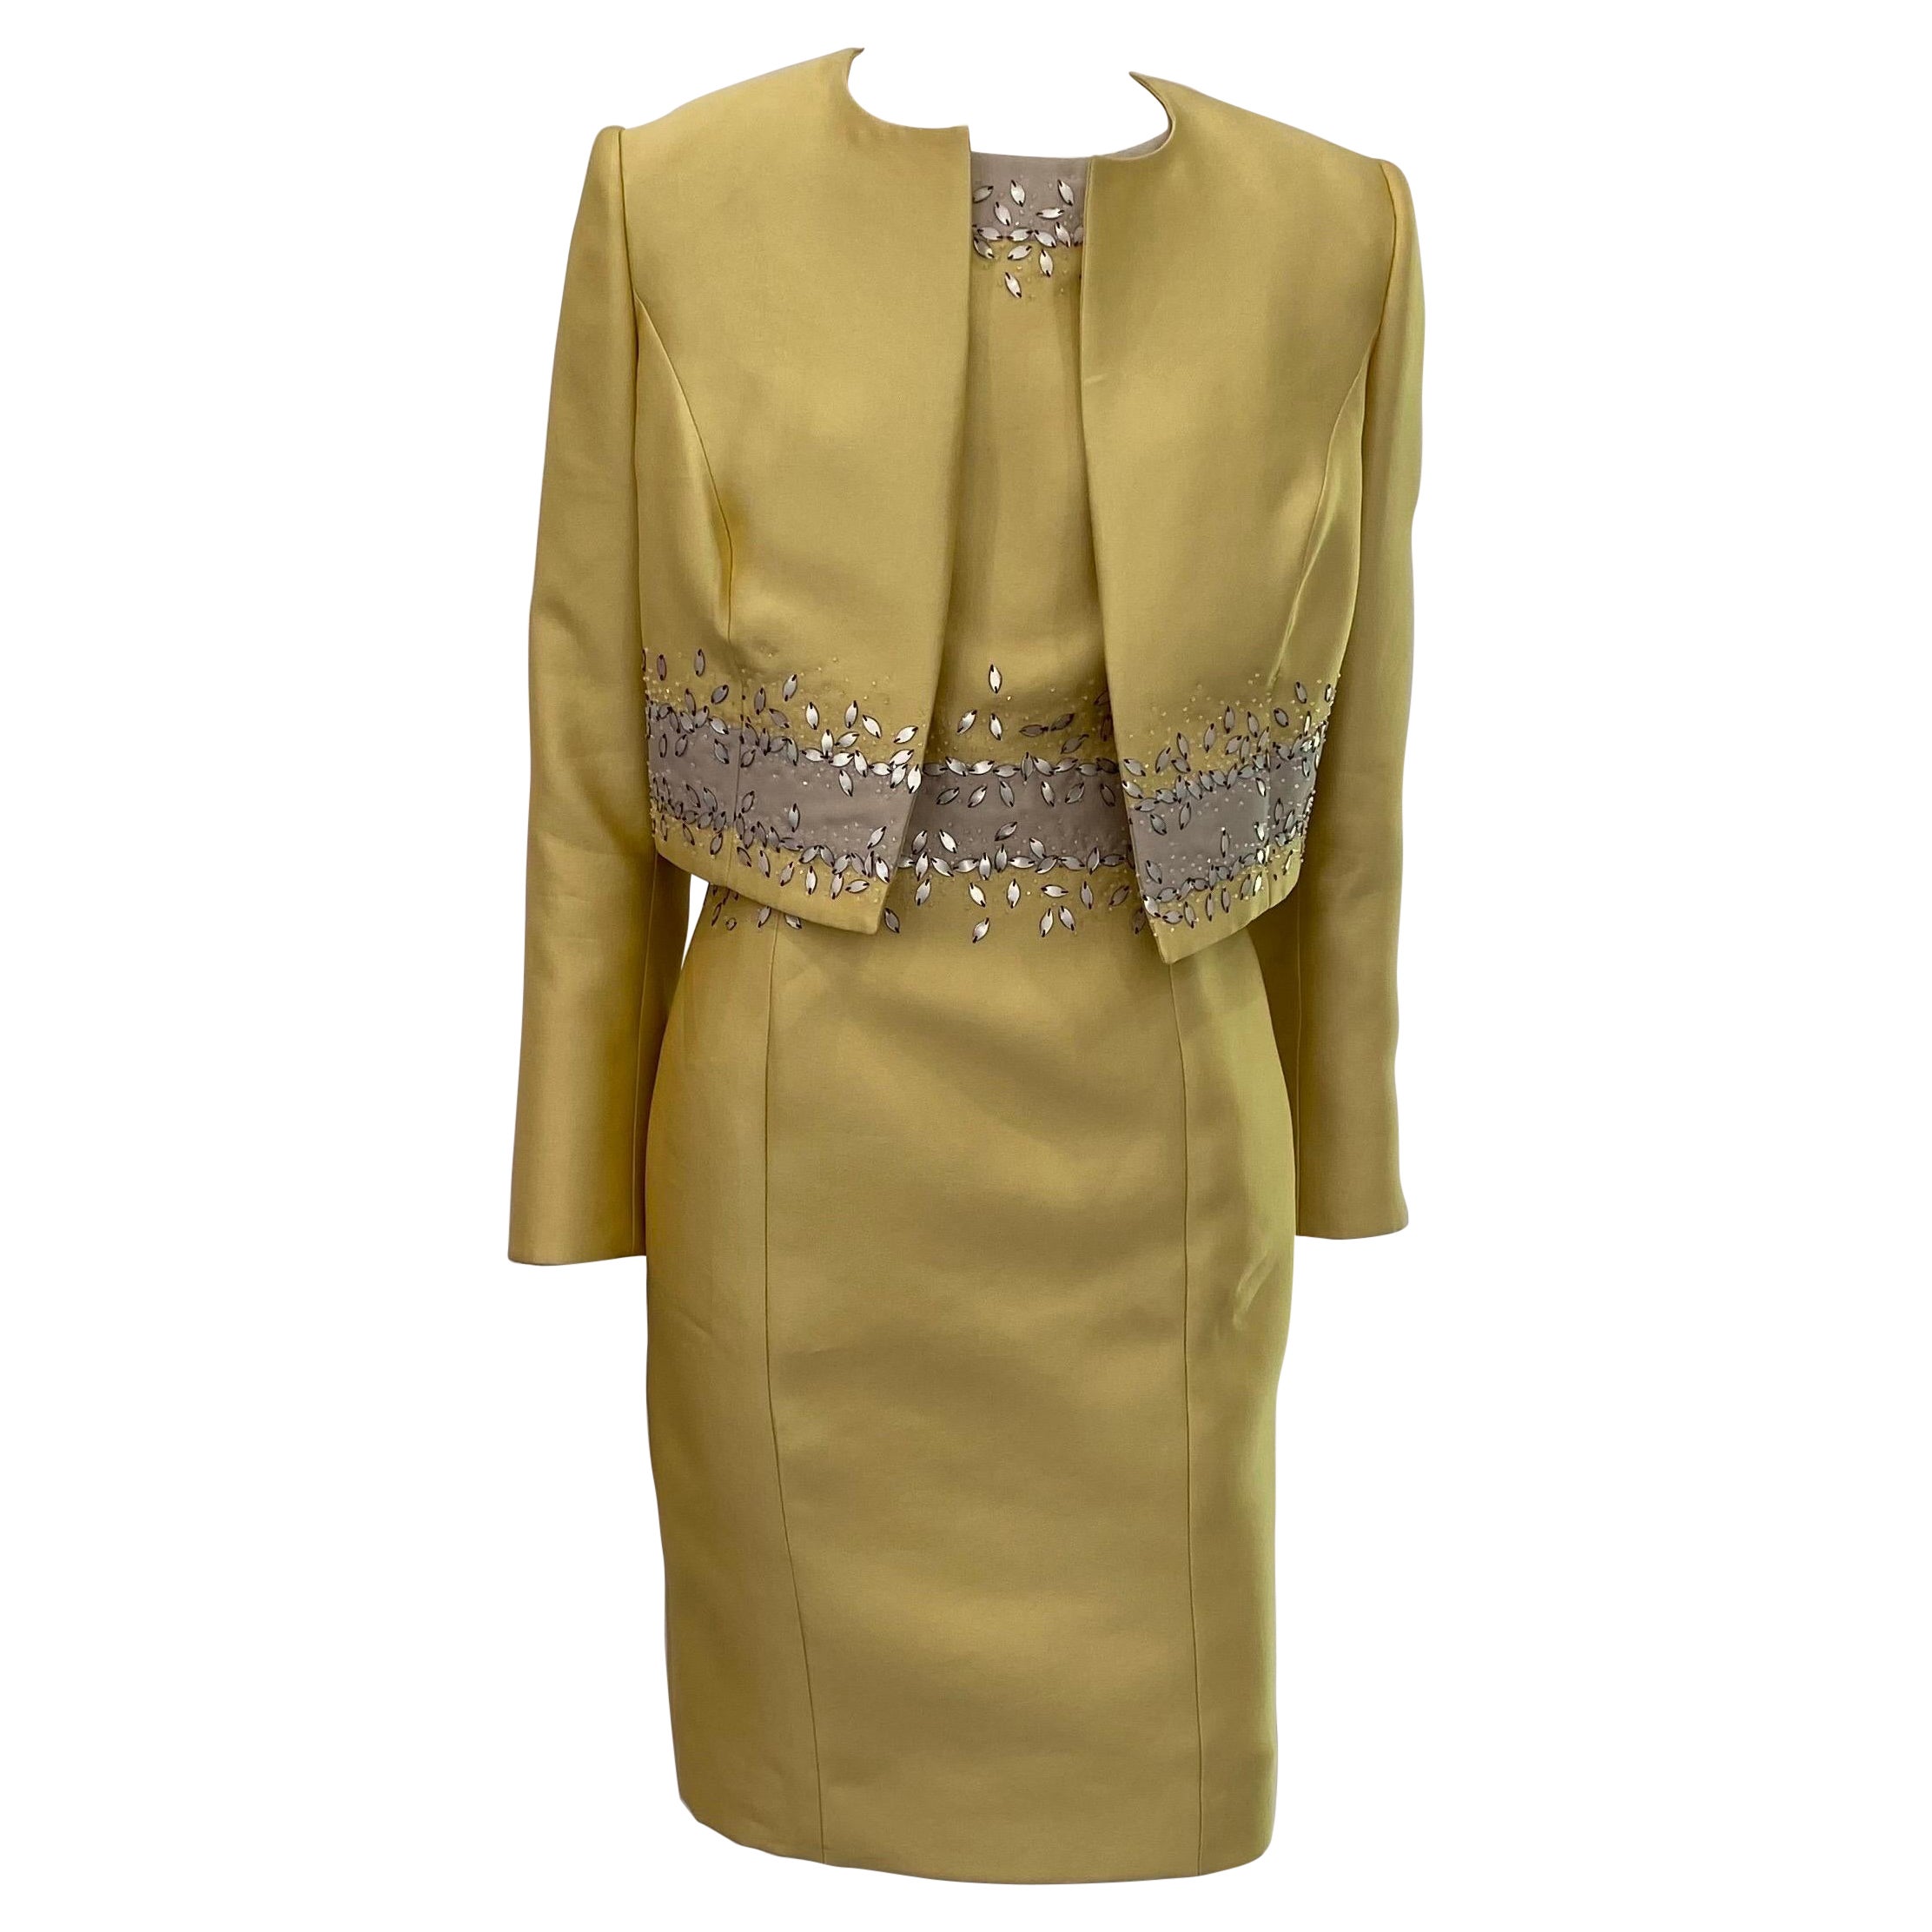 Carolina Herrera Mustard Beaded Silk Sleeveless Dress with Jacket- Sz 10